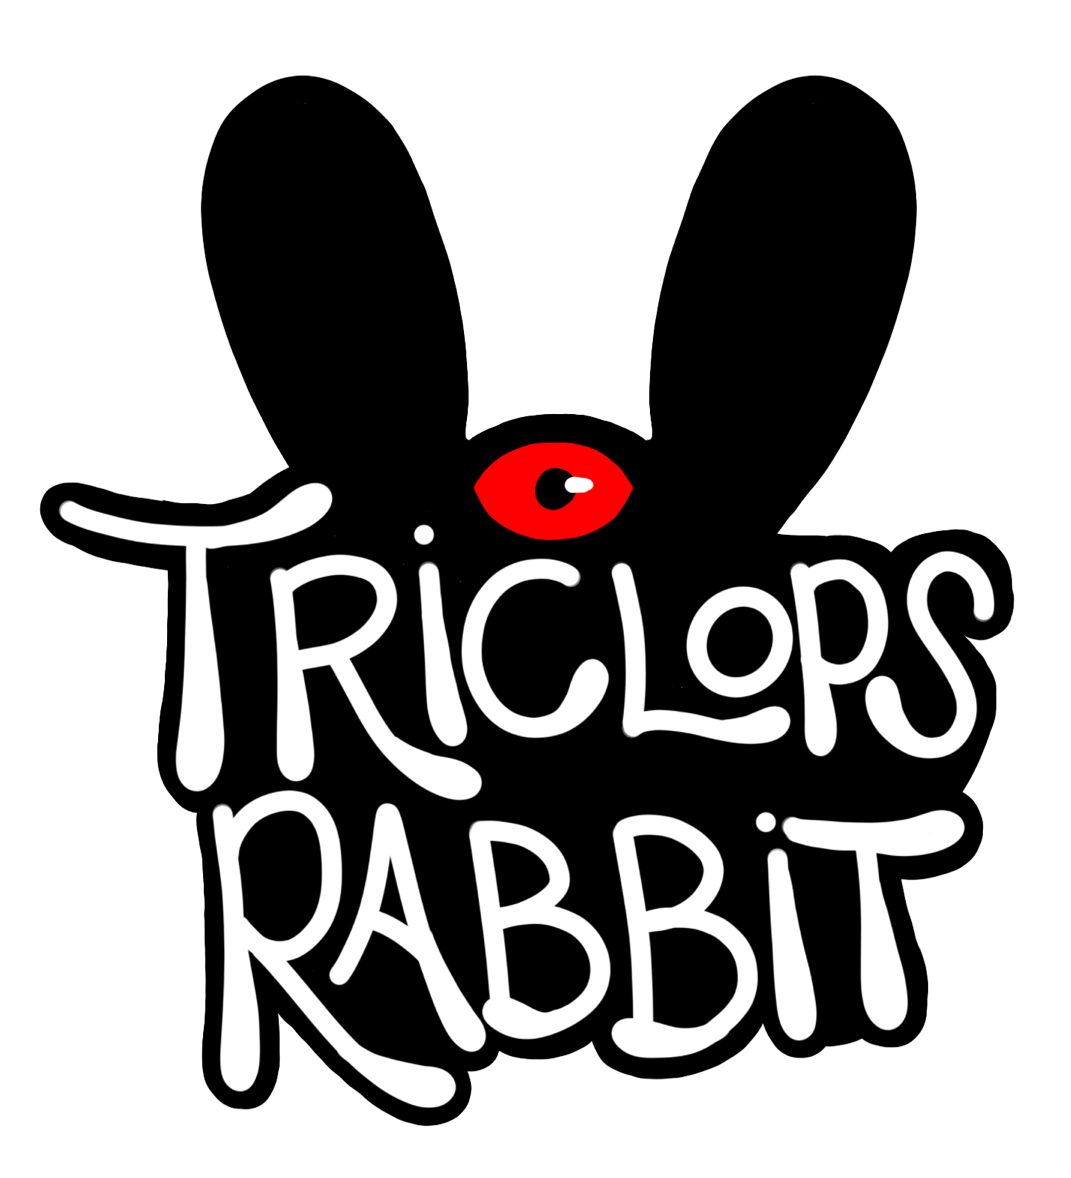 Triclops Rabbit